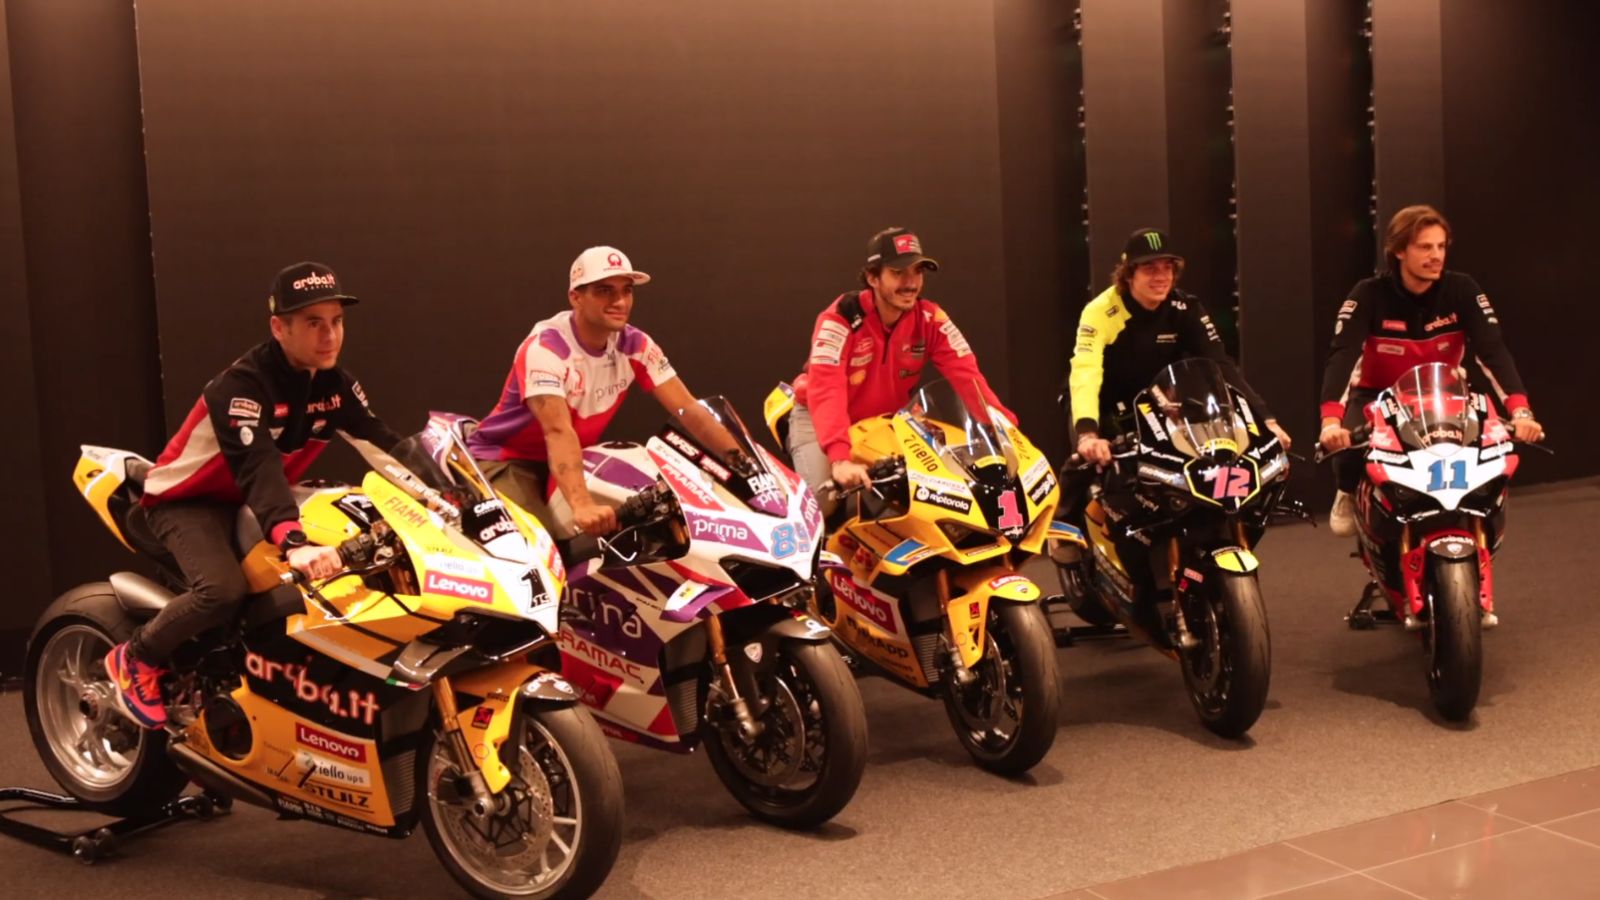 Pilotos com suas Ducati durante evento em Bolonha